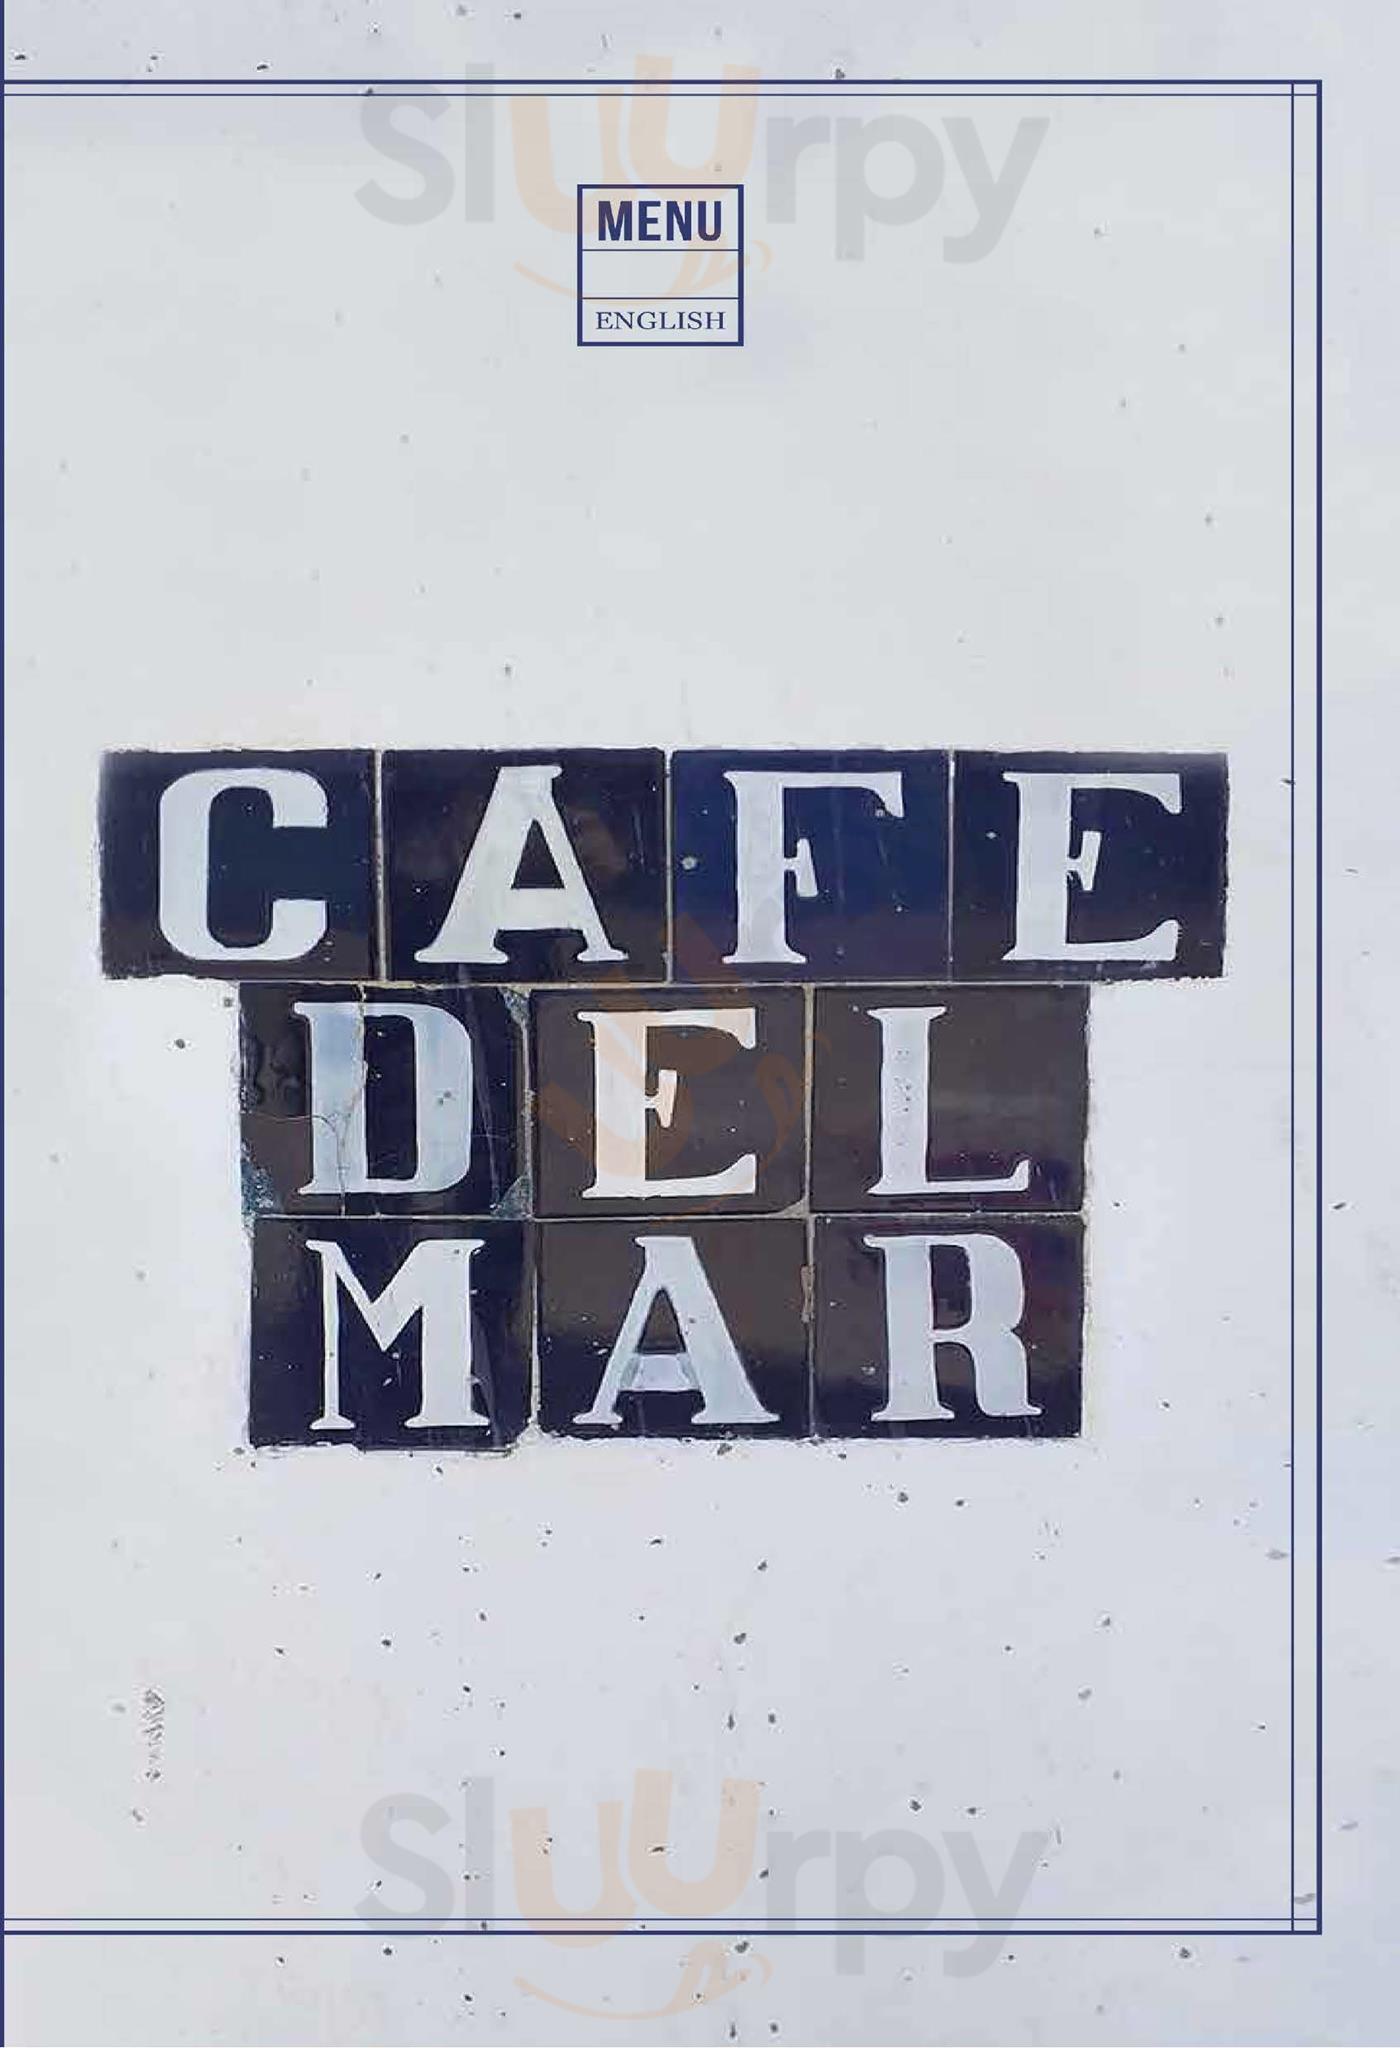 Café Del Mar Ibiza Sant Antoni de Portmany Menu - 1